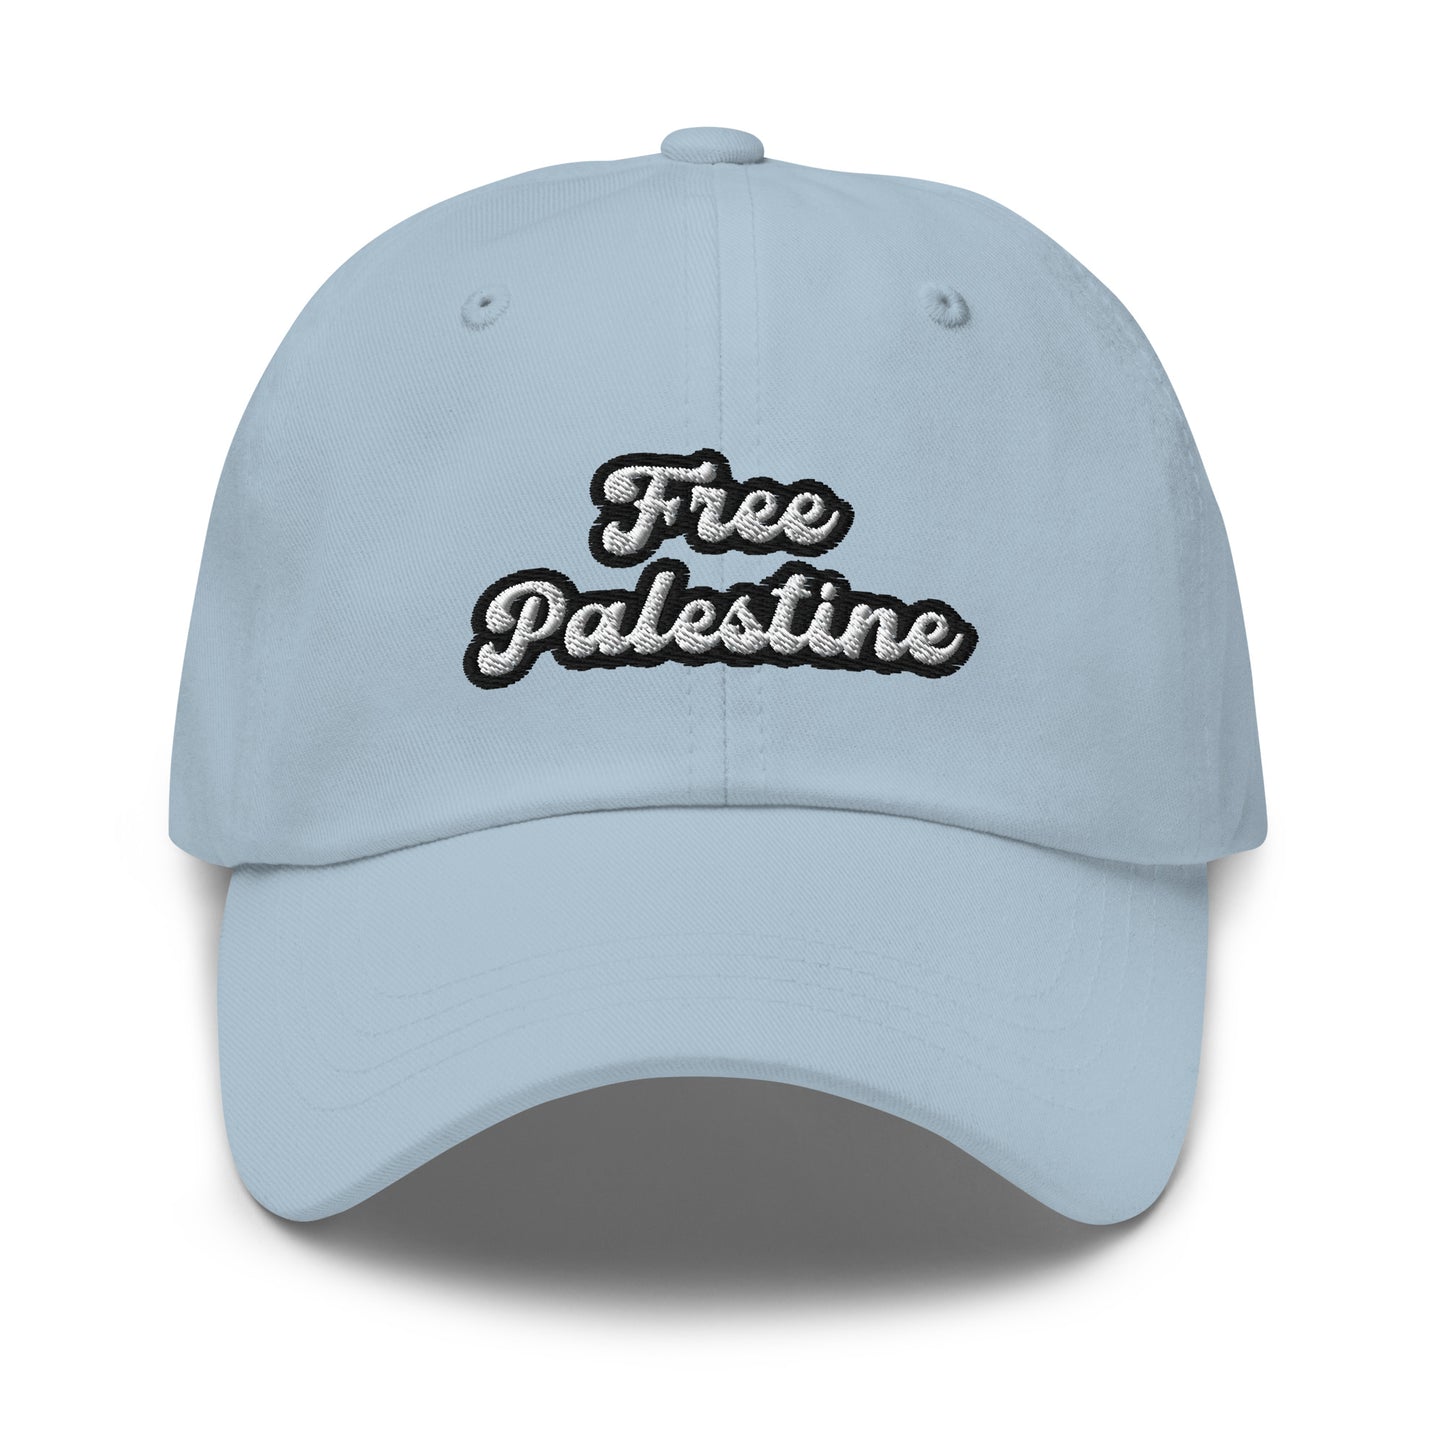 Free Palestine Dad Hat